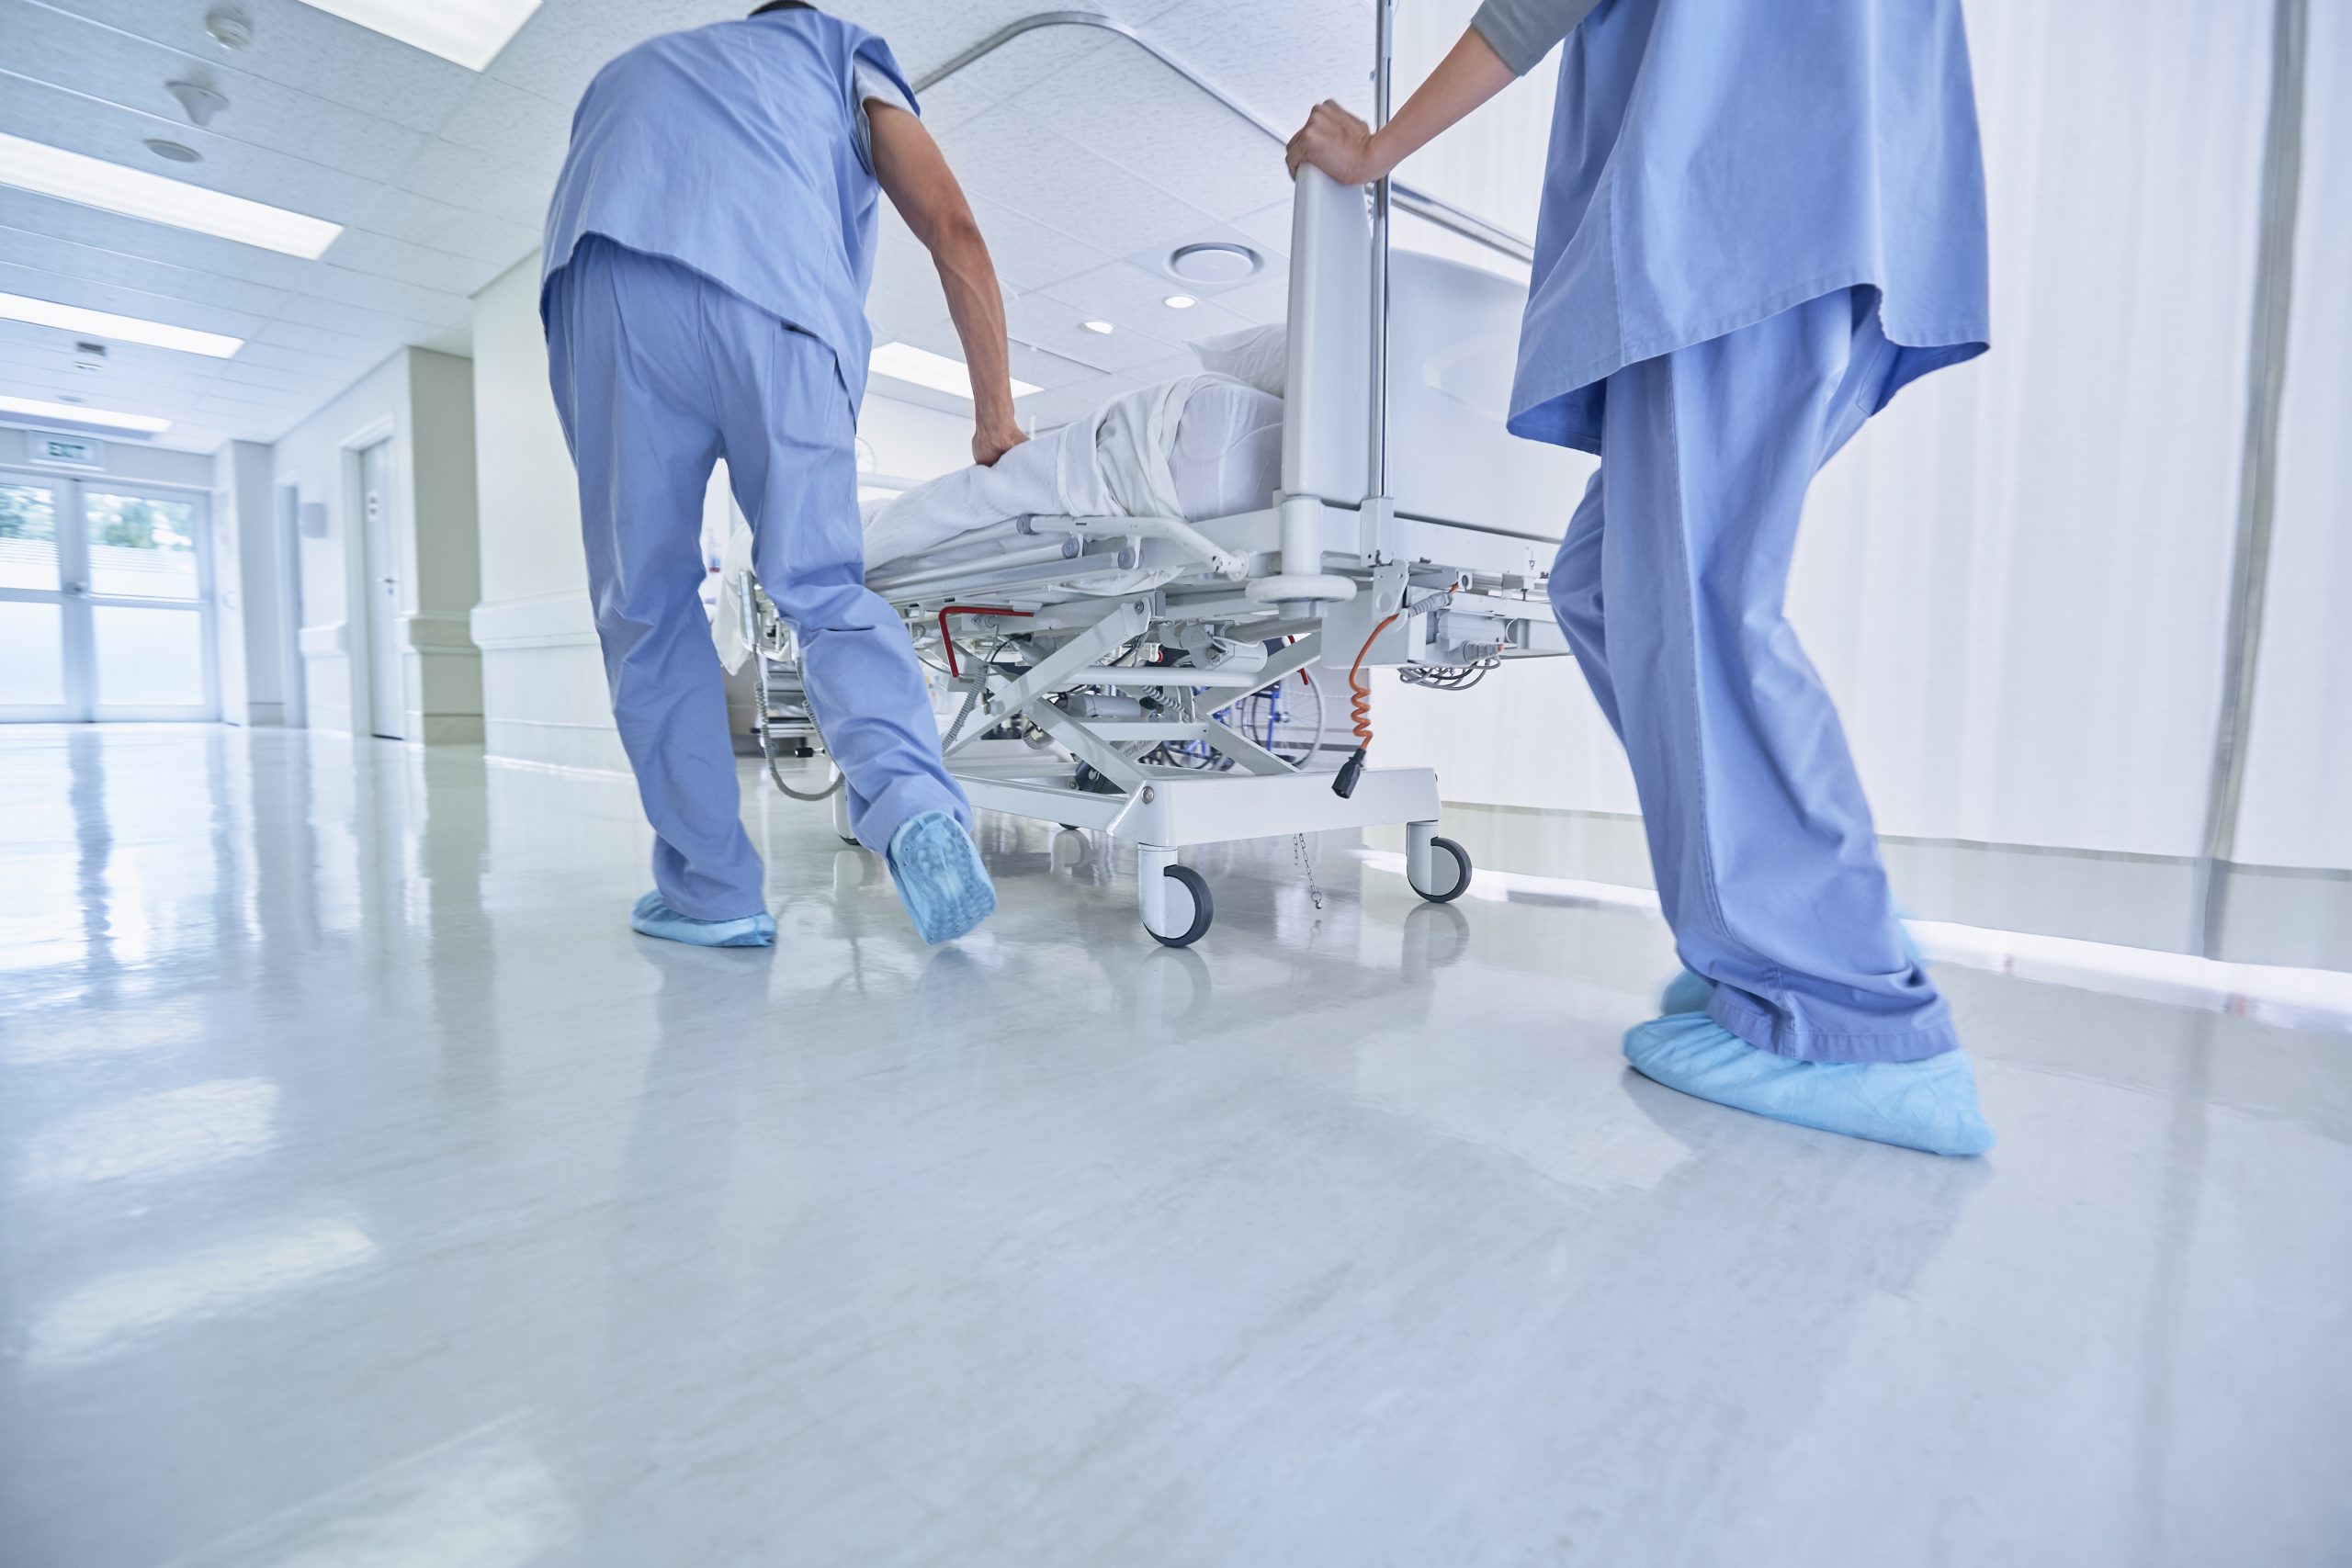 two medics urgently pushing hospital bed in corrid 2022 03 07 23 54 32 utc scaled